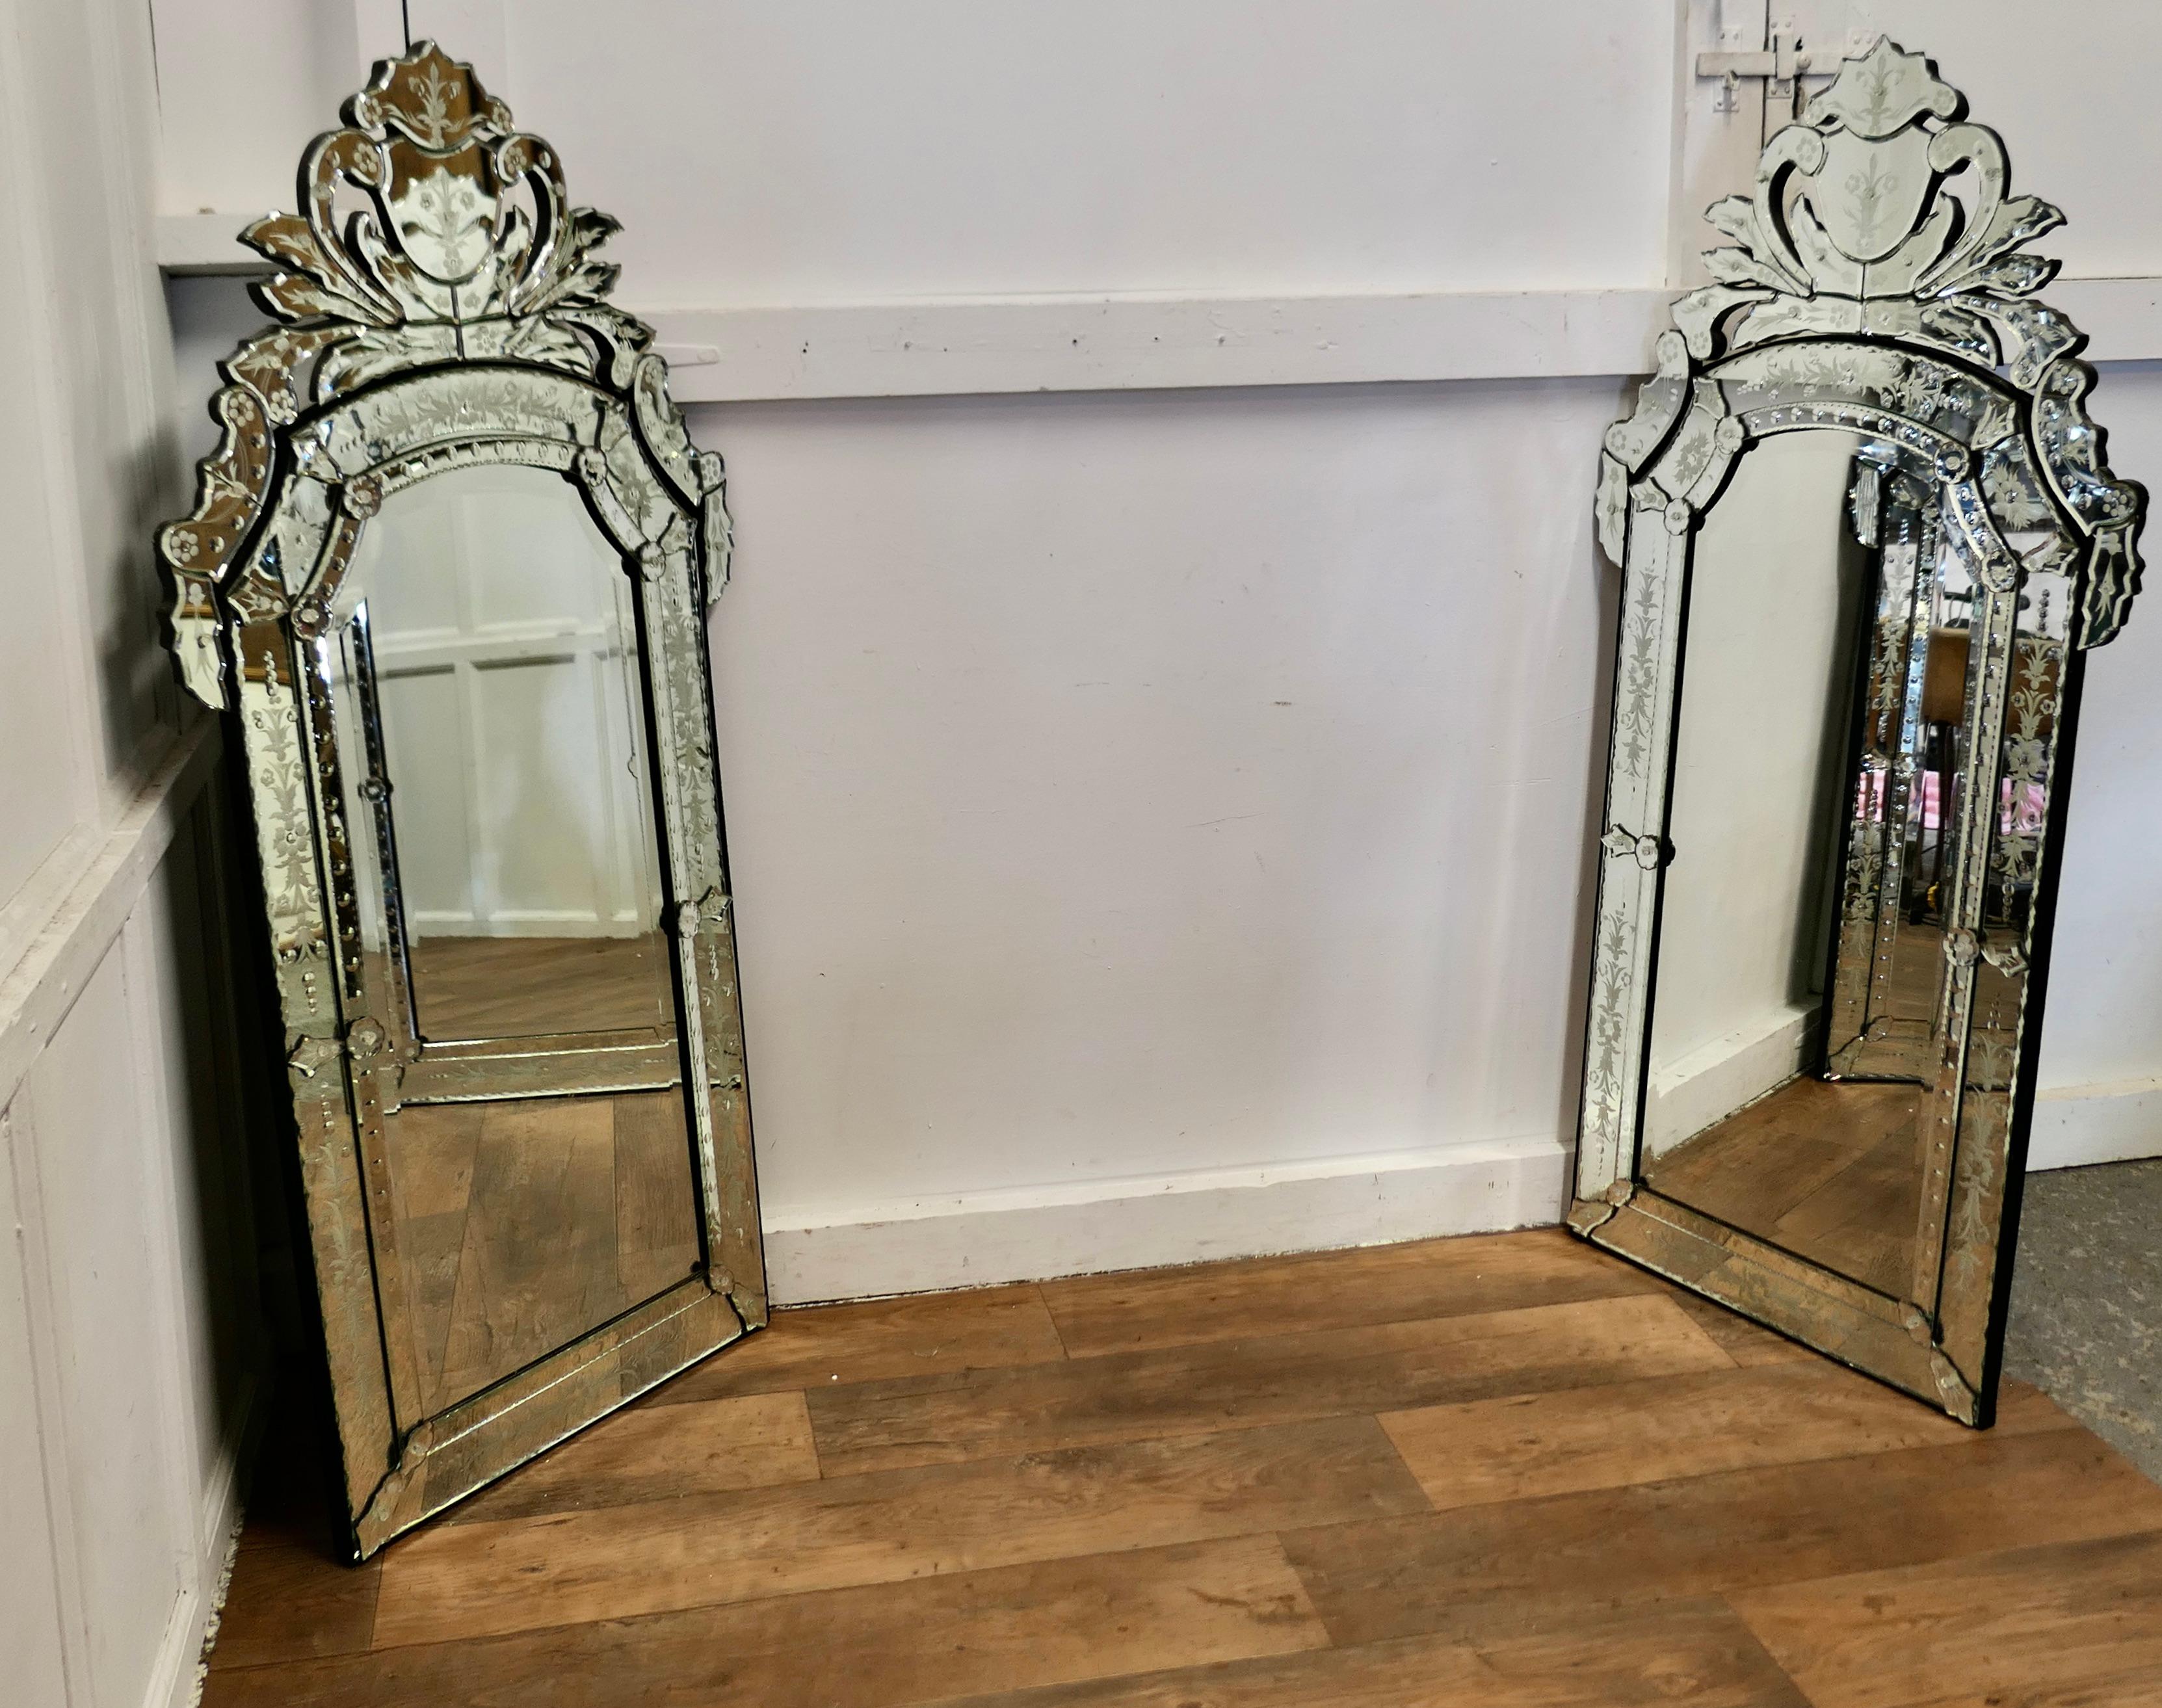 Superbe paire de grands miroirs de pilier vénitiens

Ce sont  Elles sont toutes deux en très bon état et sont ornées de corniches élaborées et gravées. De larges bordures gravées entourent également le miroir central.
Il n'y a pas de réparations ni